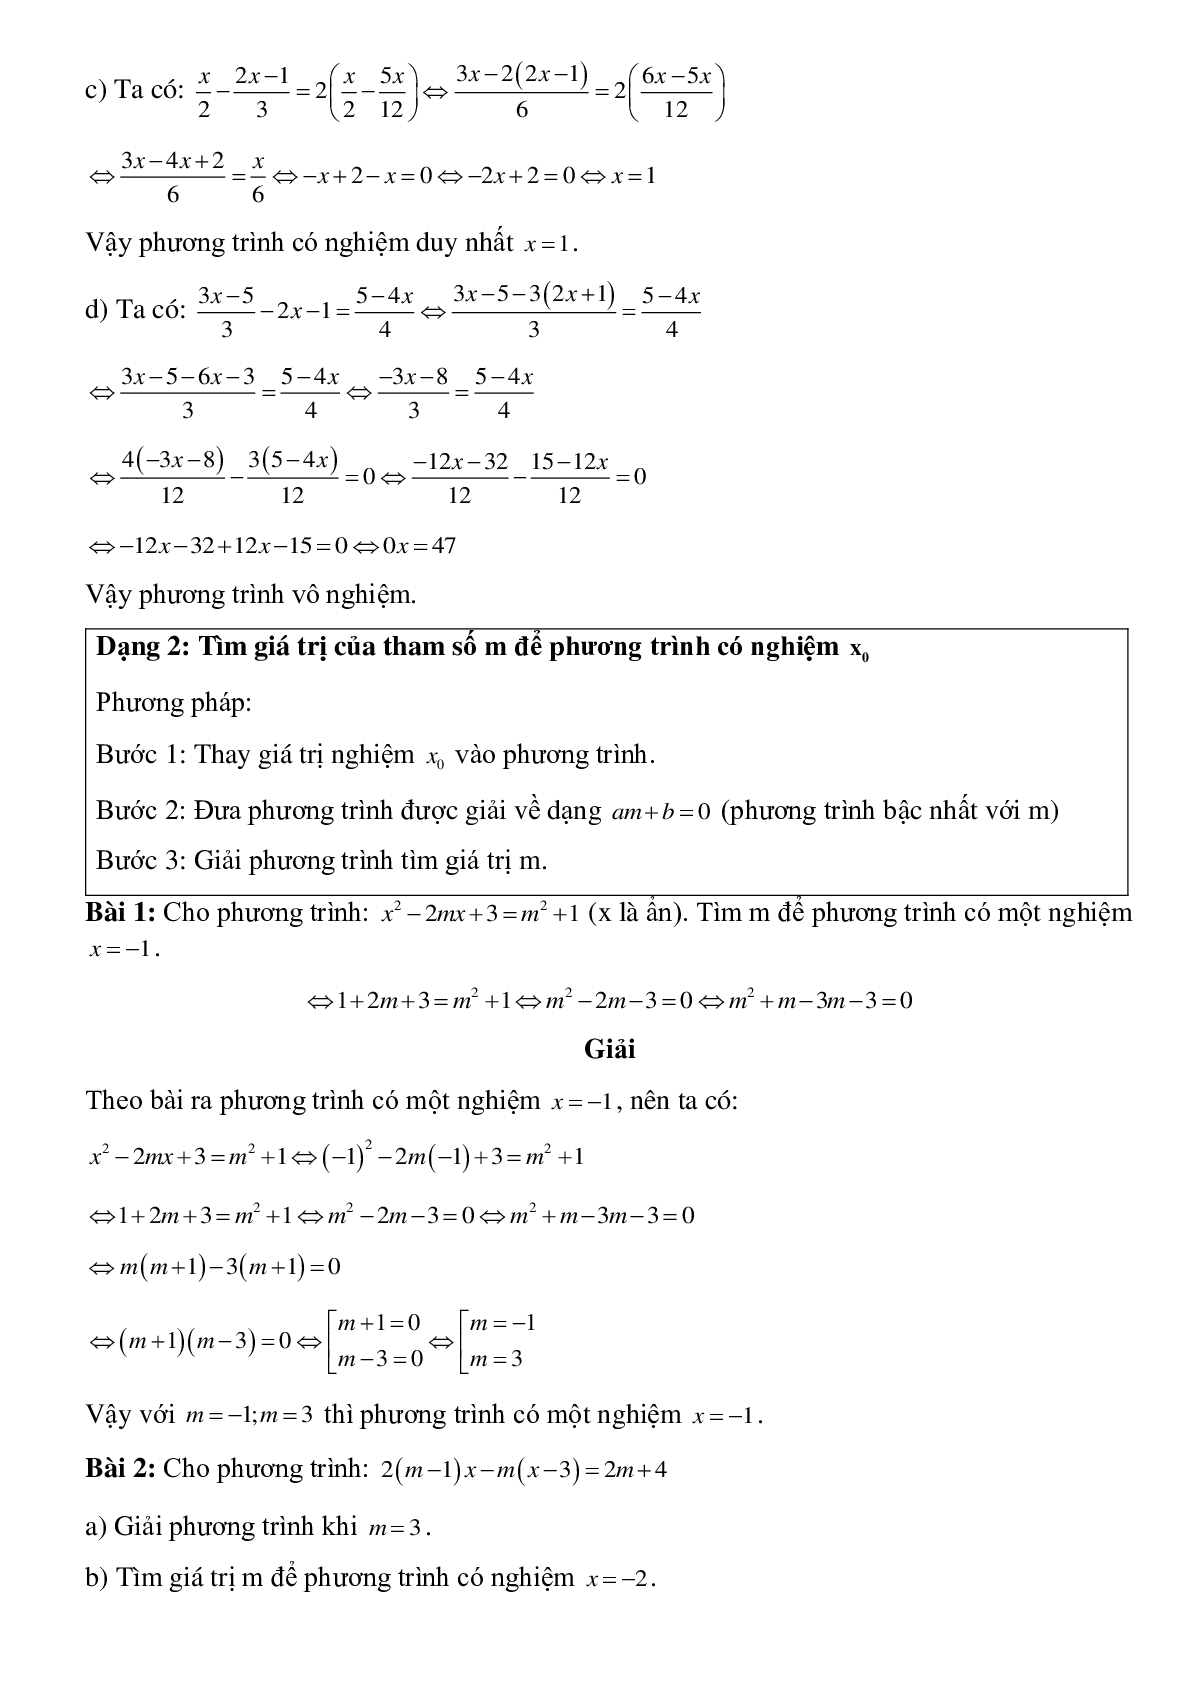 Hệ thống lý thuyết và bài tập về Phương trình bậc nhất và phương trình đưa về dạng ax+b=0 có lời giải (trang 4)